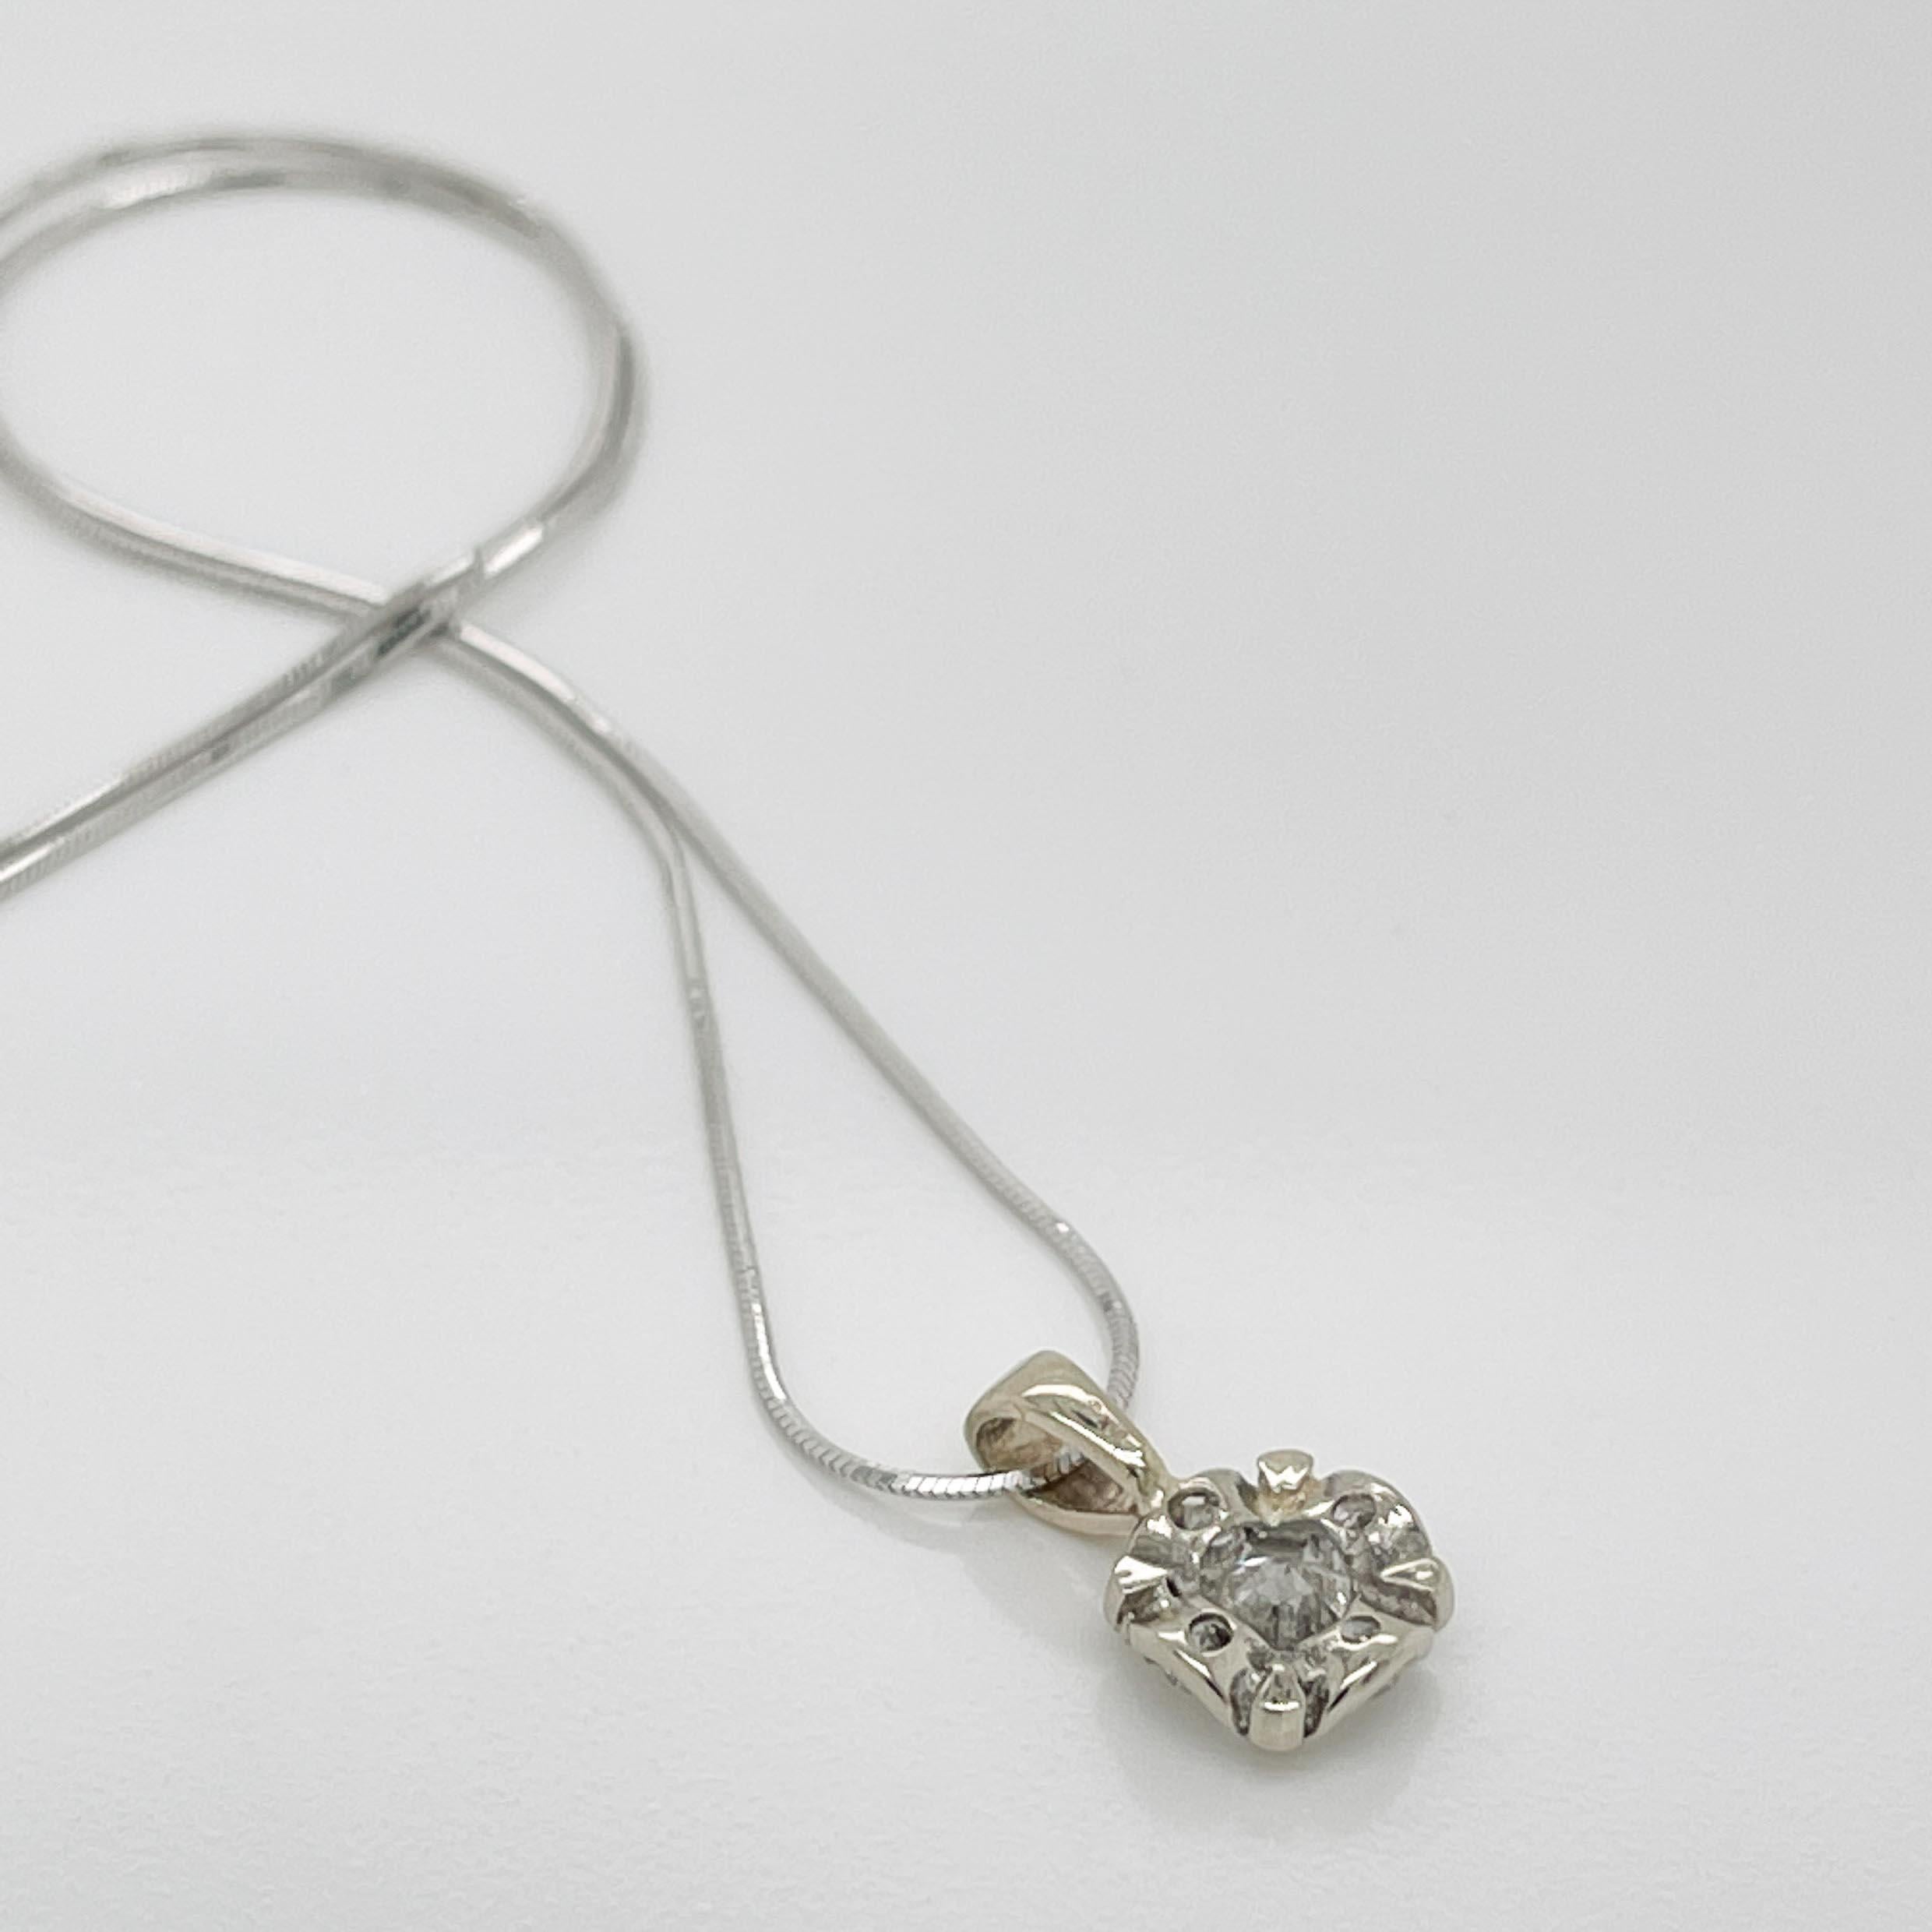 Vintage Round Brilliant Cut Diamond & 14K White Gold Pendant Necklace For Sale 2